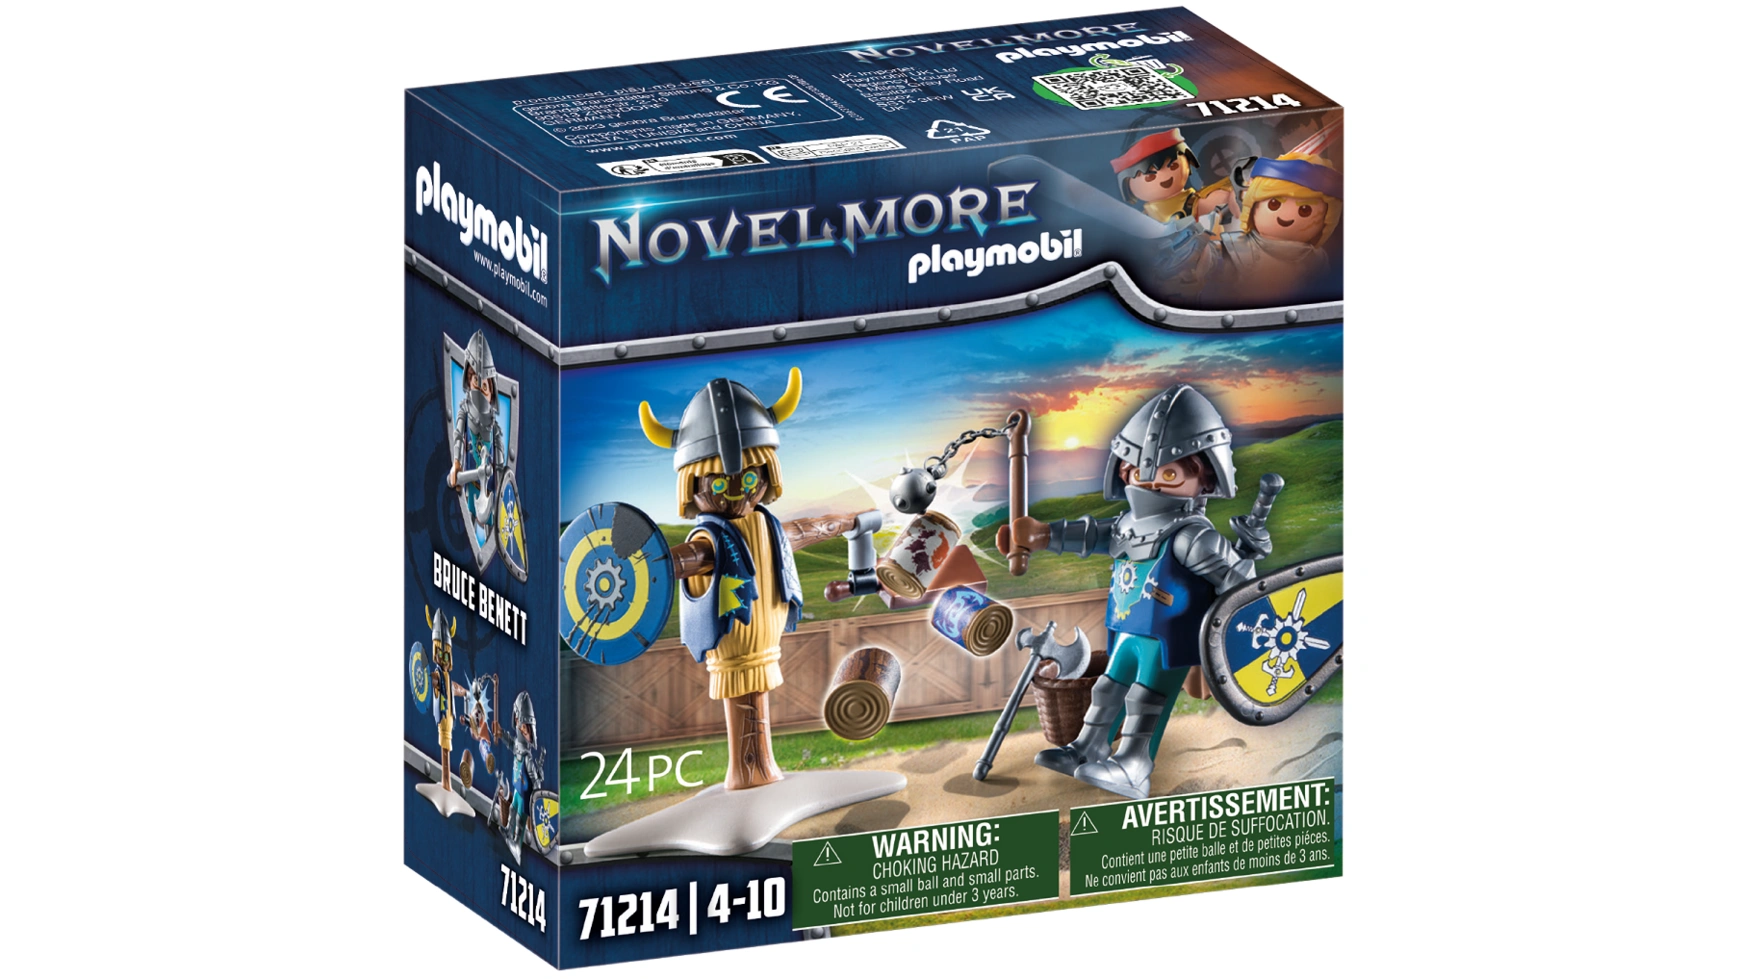 Novelmore боевая подготовка Playmobil novelmore день рождения рыцаря playmobil